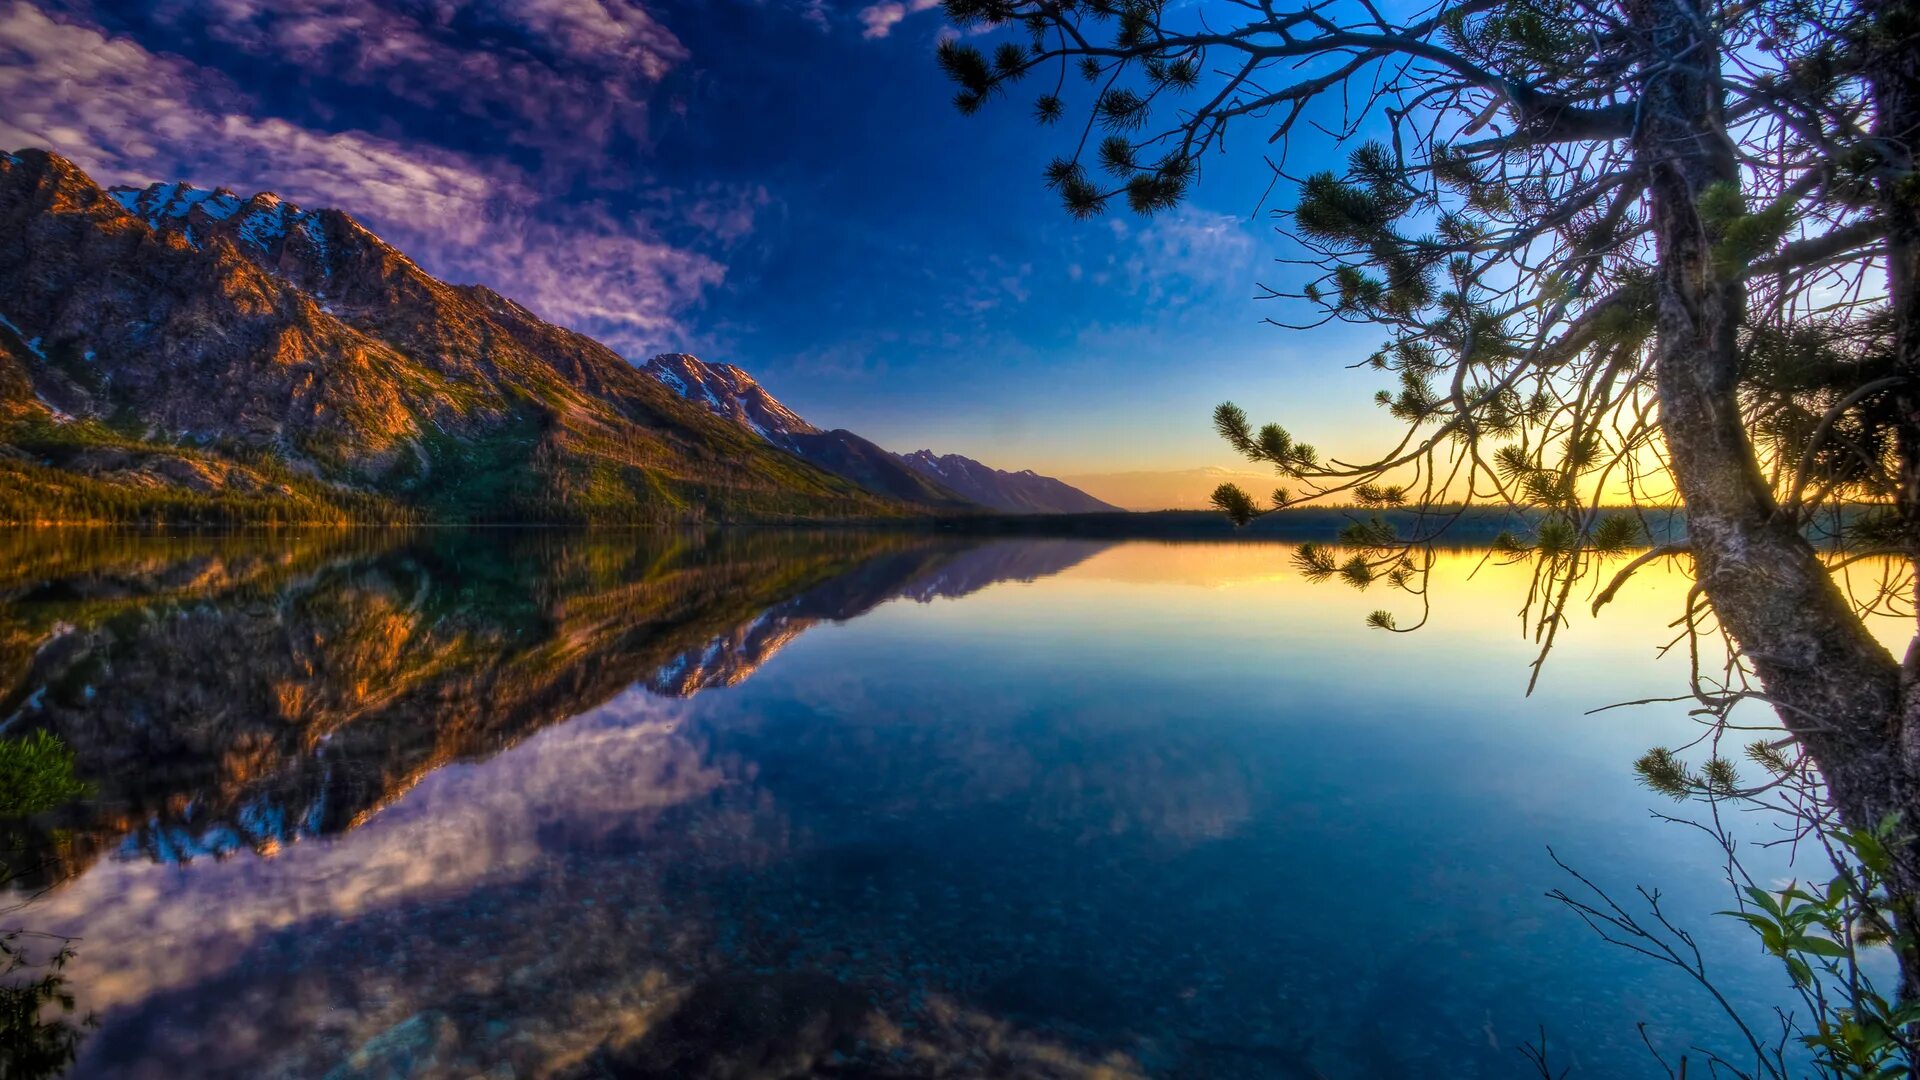 Красивые картинки природы хорошего качества. Красивое озеро. Красивая природа. Прекрасная природа. Красивый пейзаж.